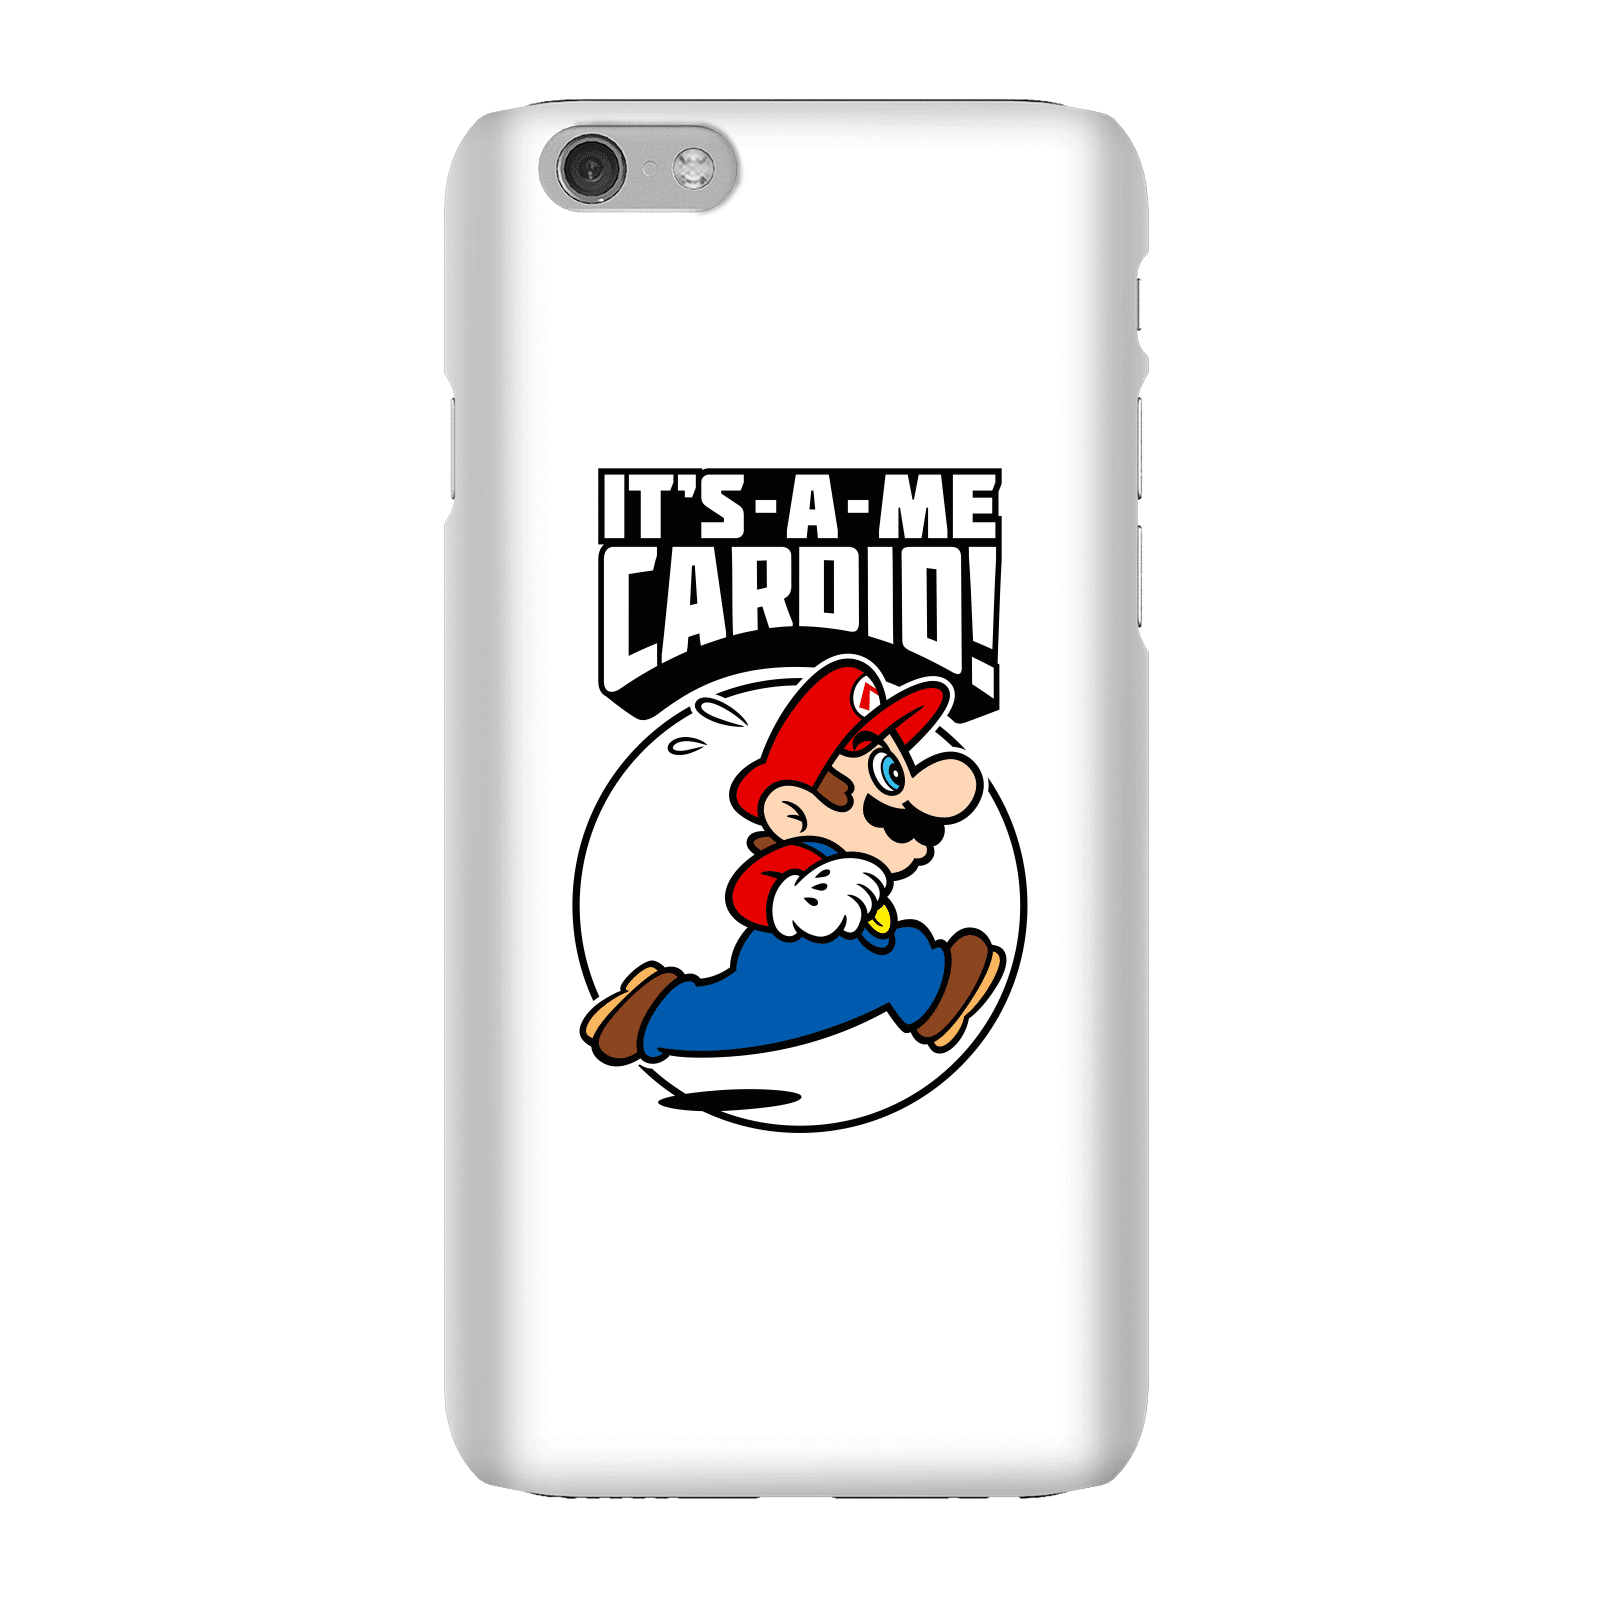 Nintendo Super Mario Cardio Phone Case - iPhone 6 - Snap Case - Matte